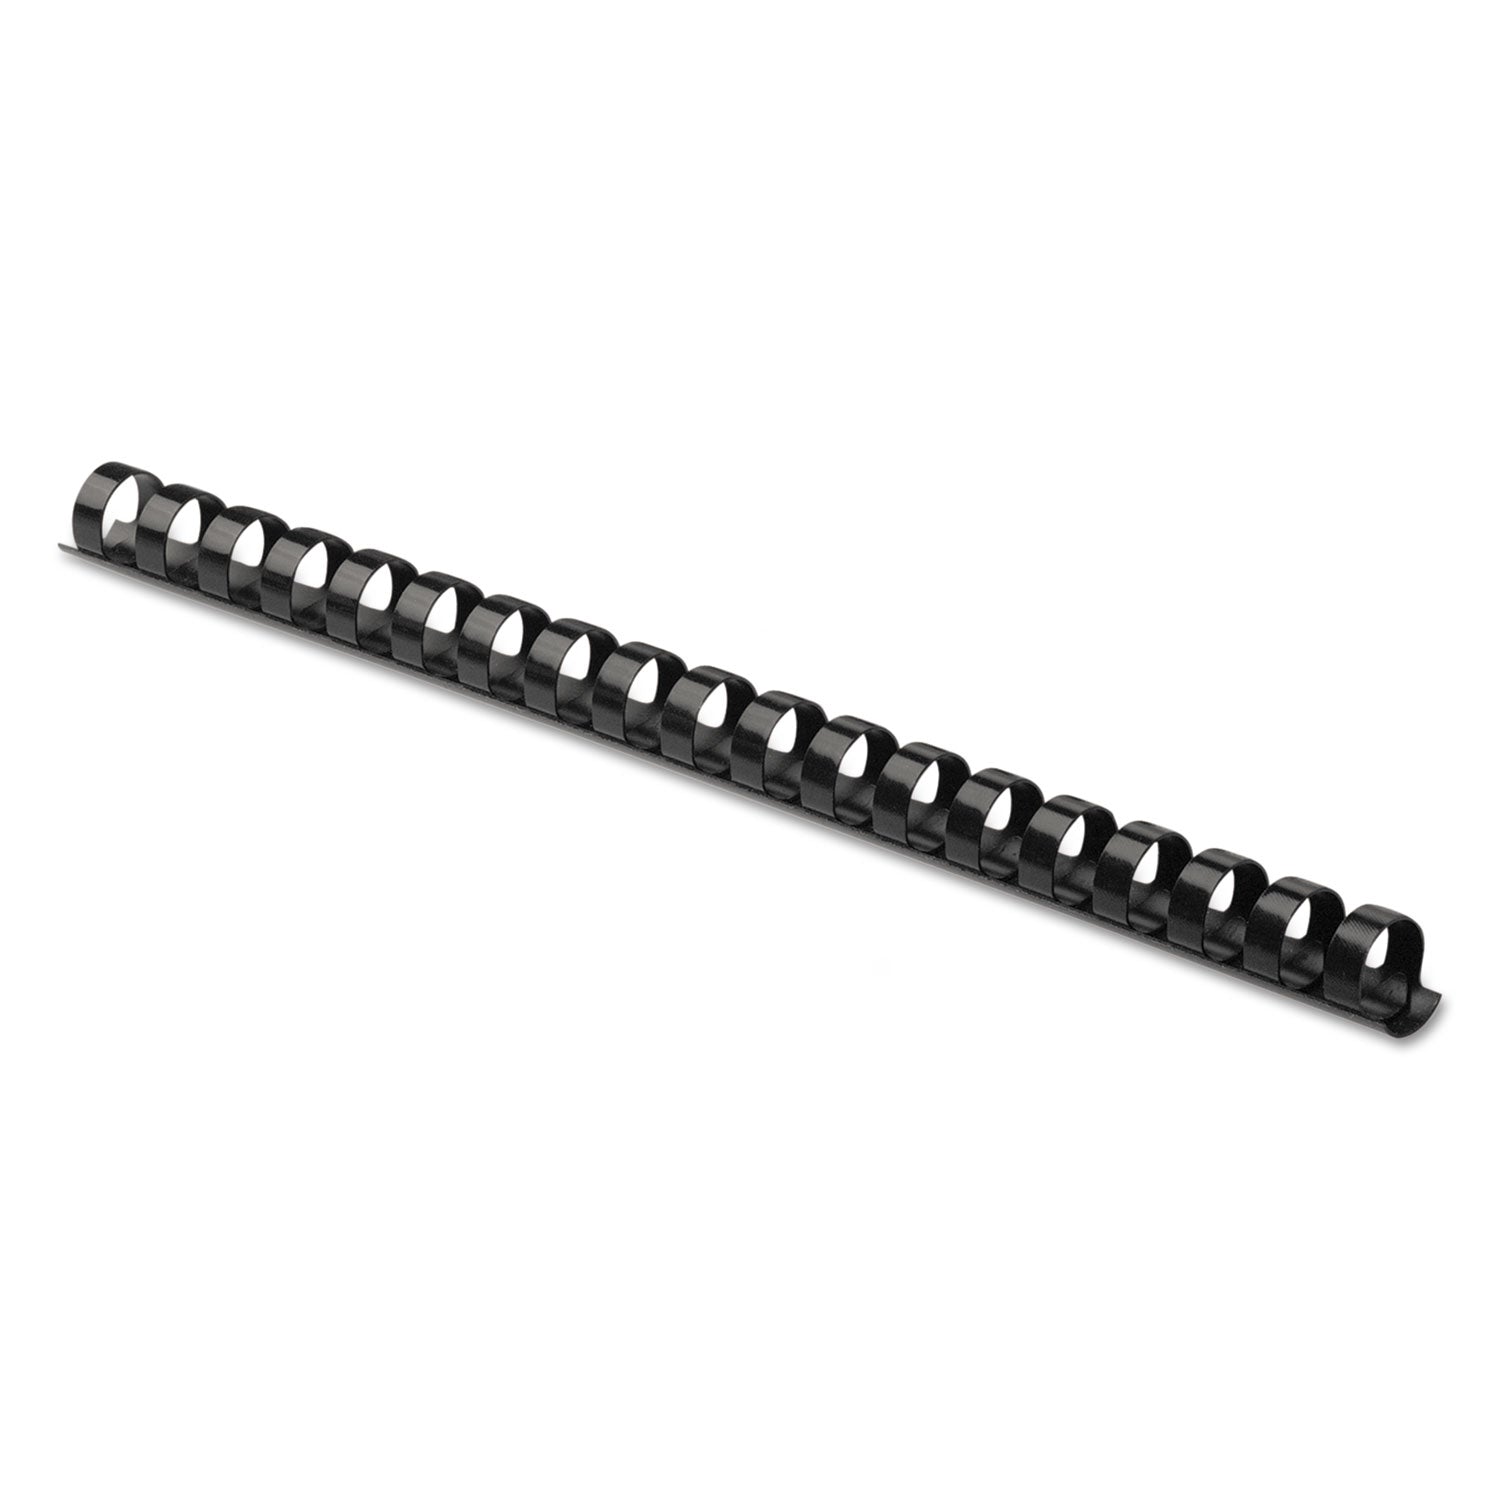 Plastic Comb Bindings, 1/2" Diameter, 90 Sheet Capacity, Black, 100/Pack - 